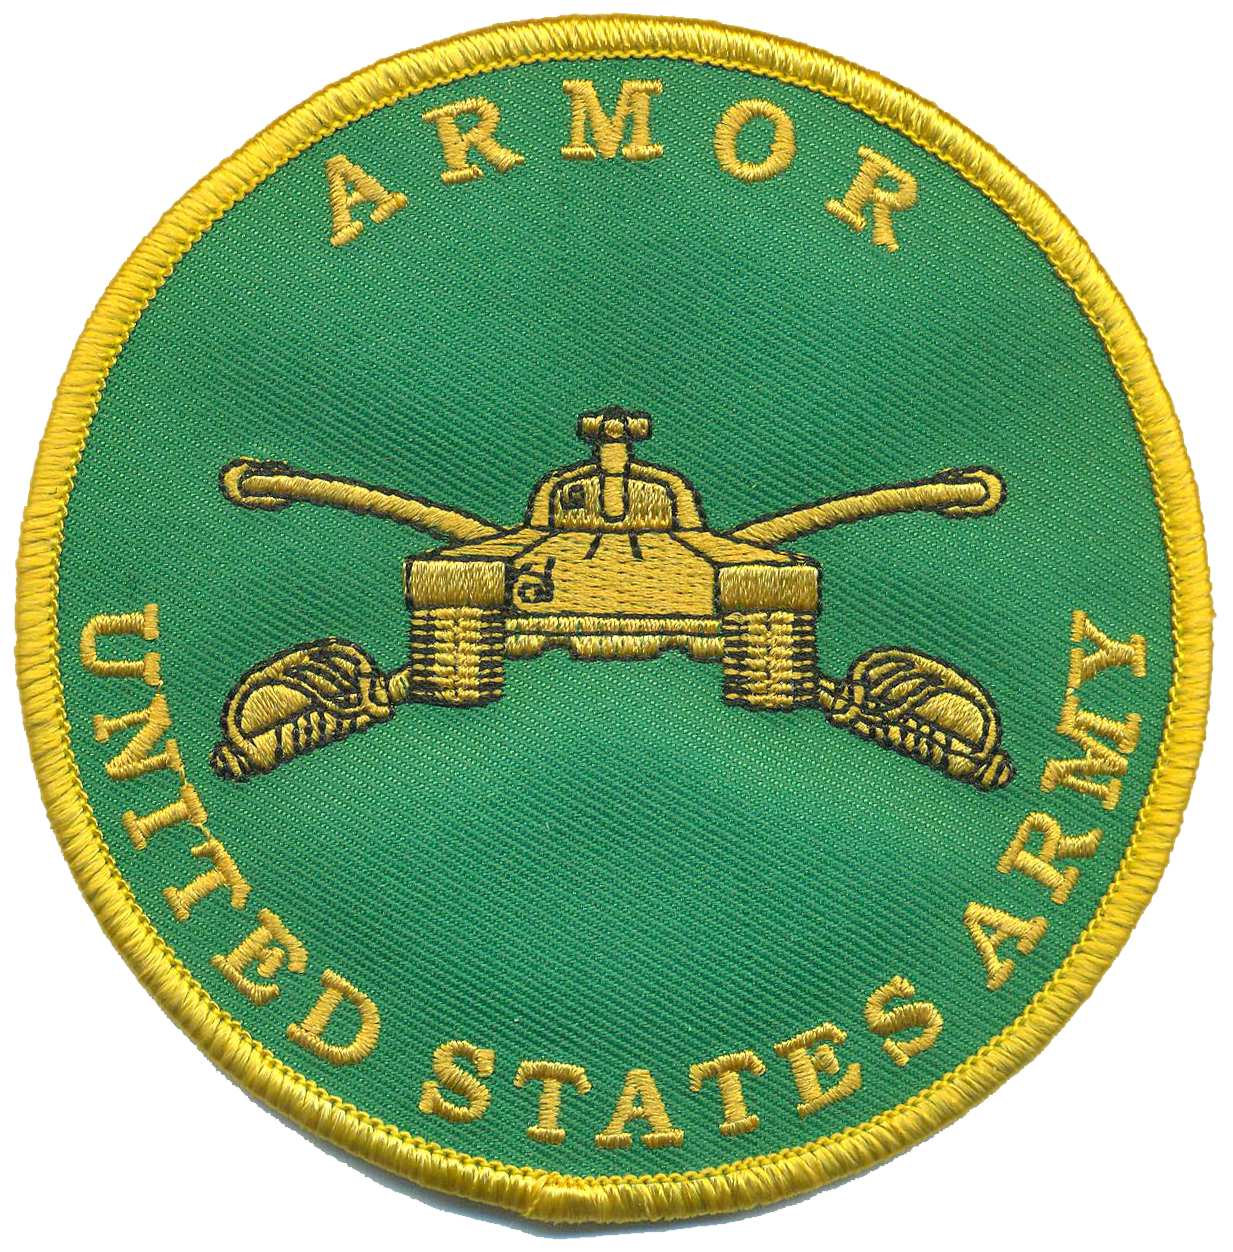 U.S. Army Armor Novelty Patch